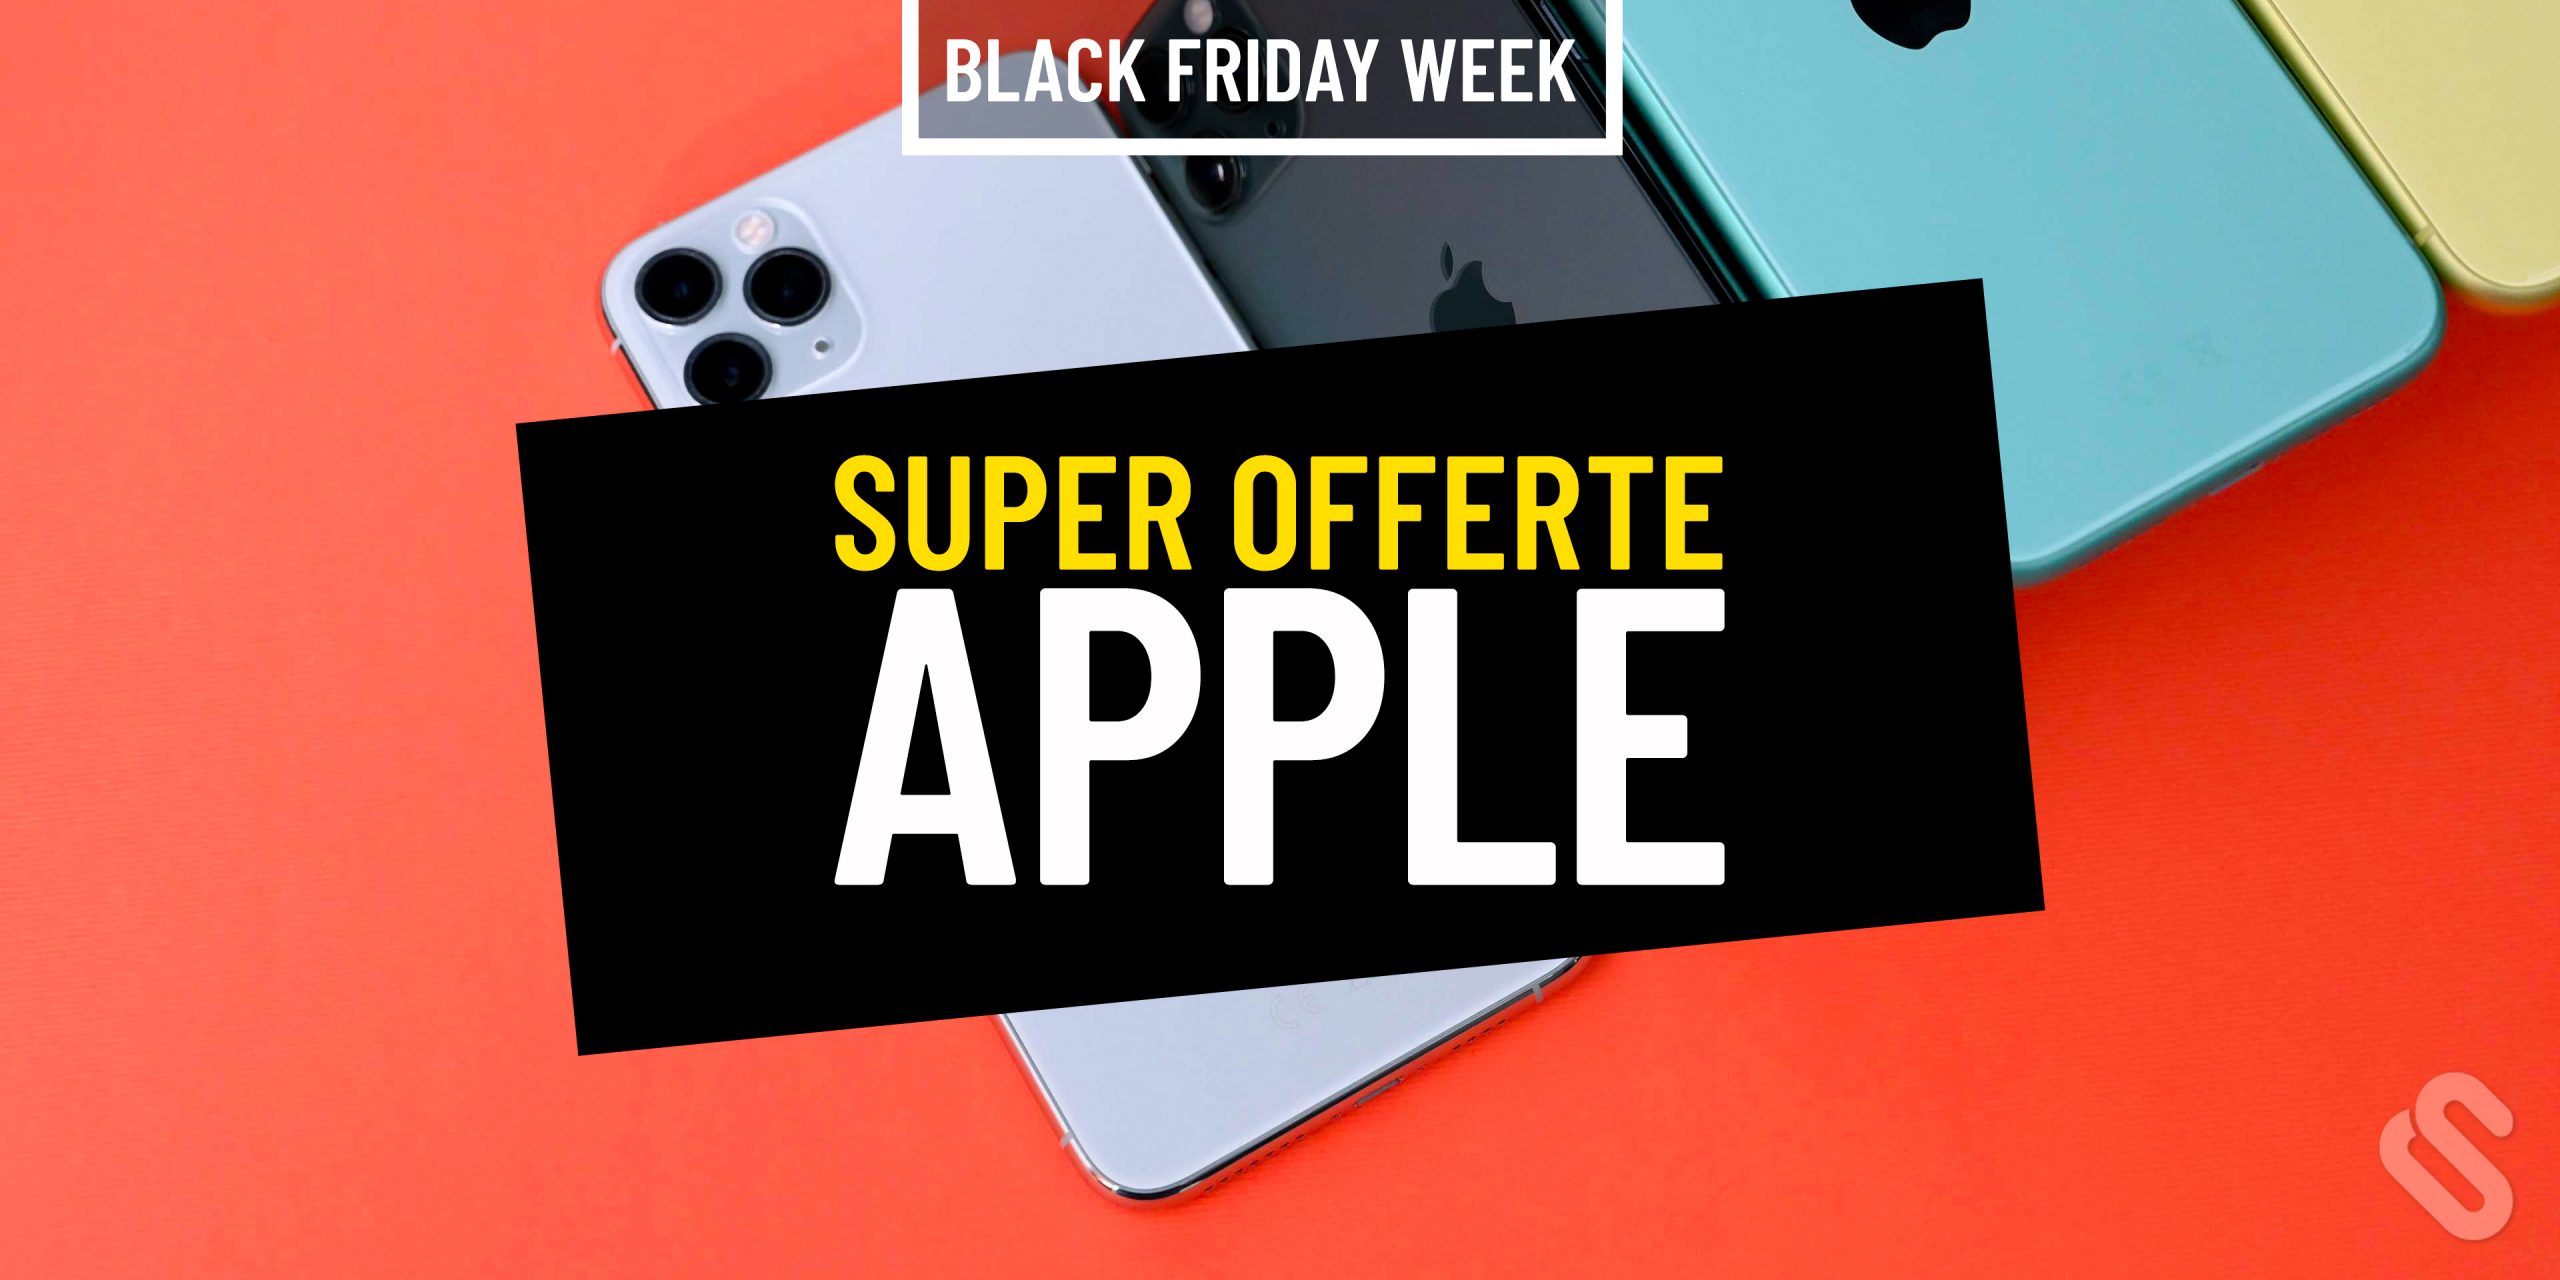 Offerte Black Friday Apple: ecco la promozione!